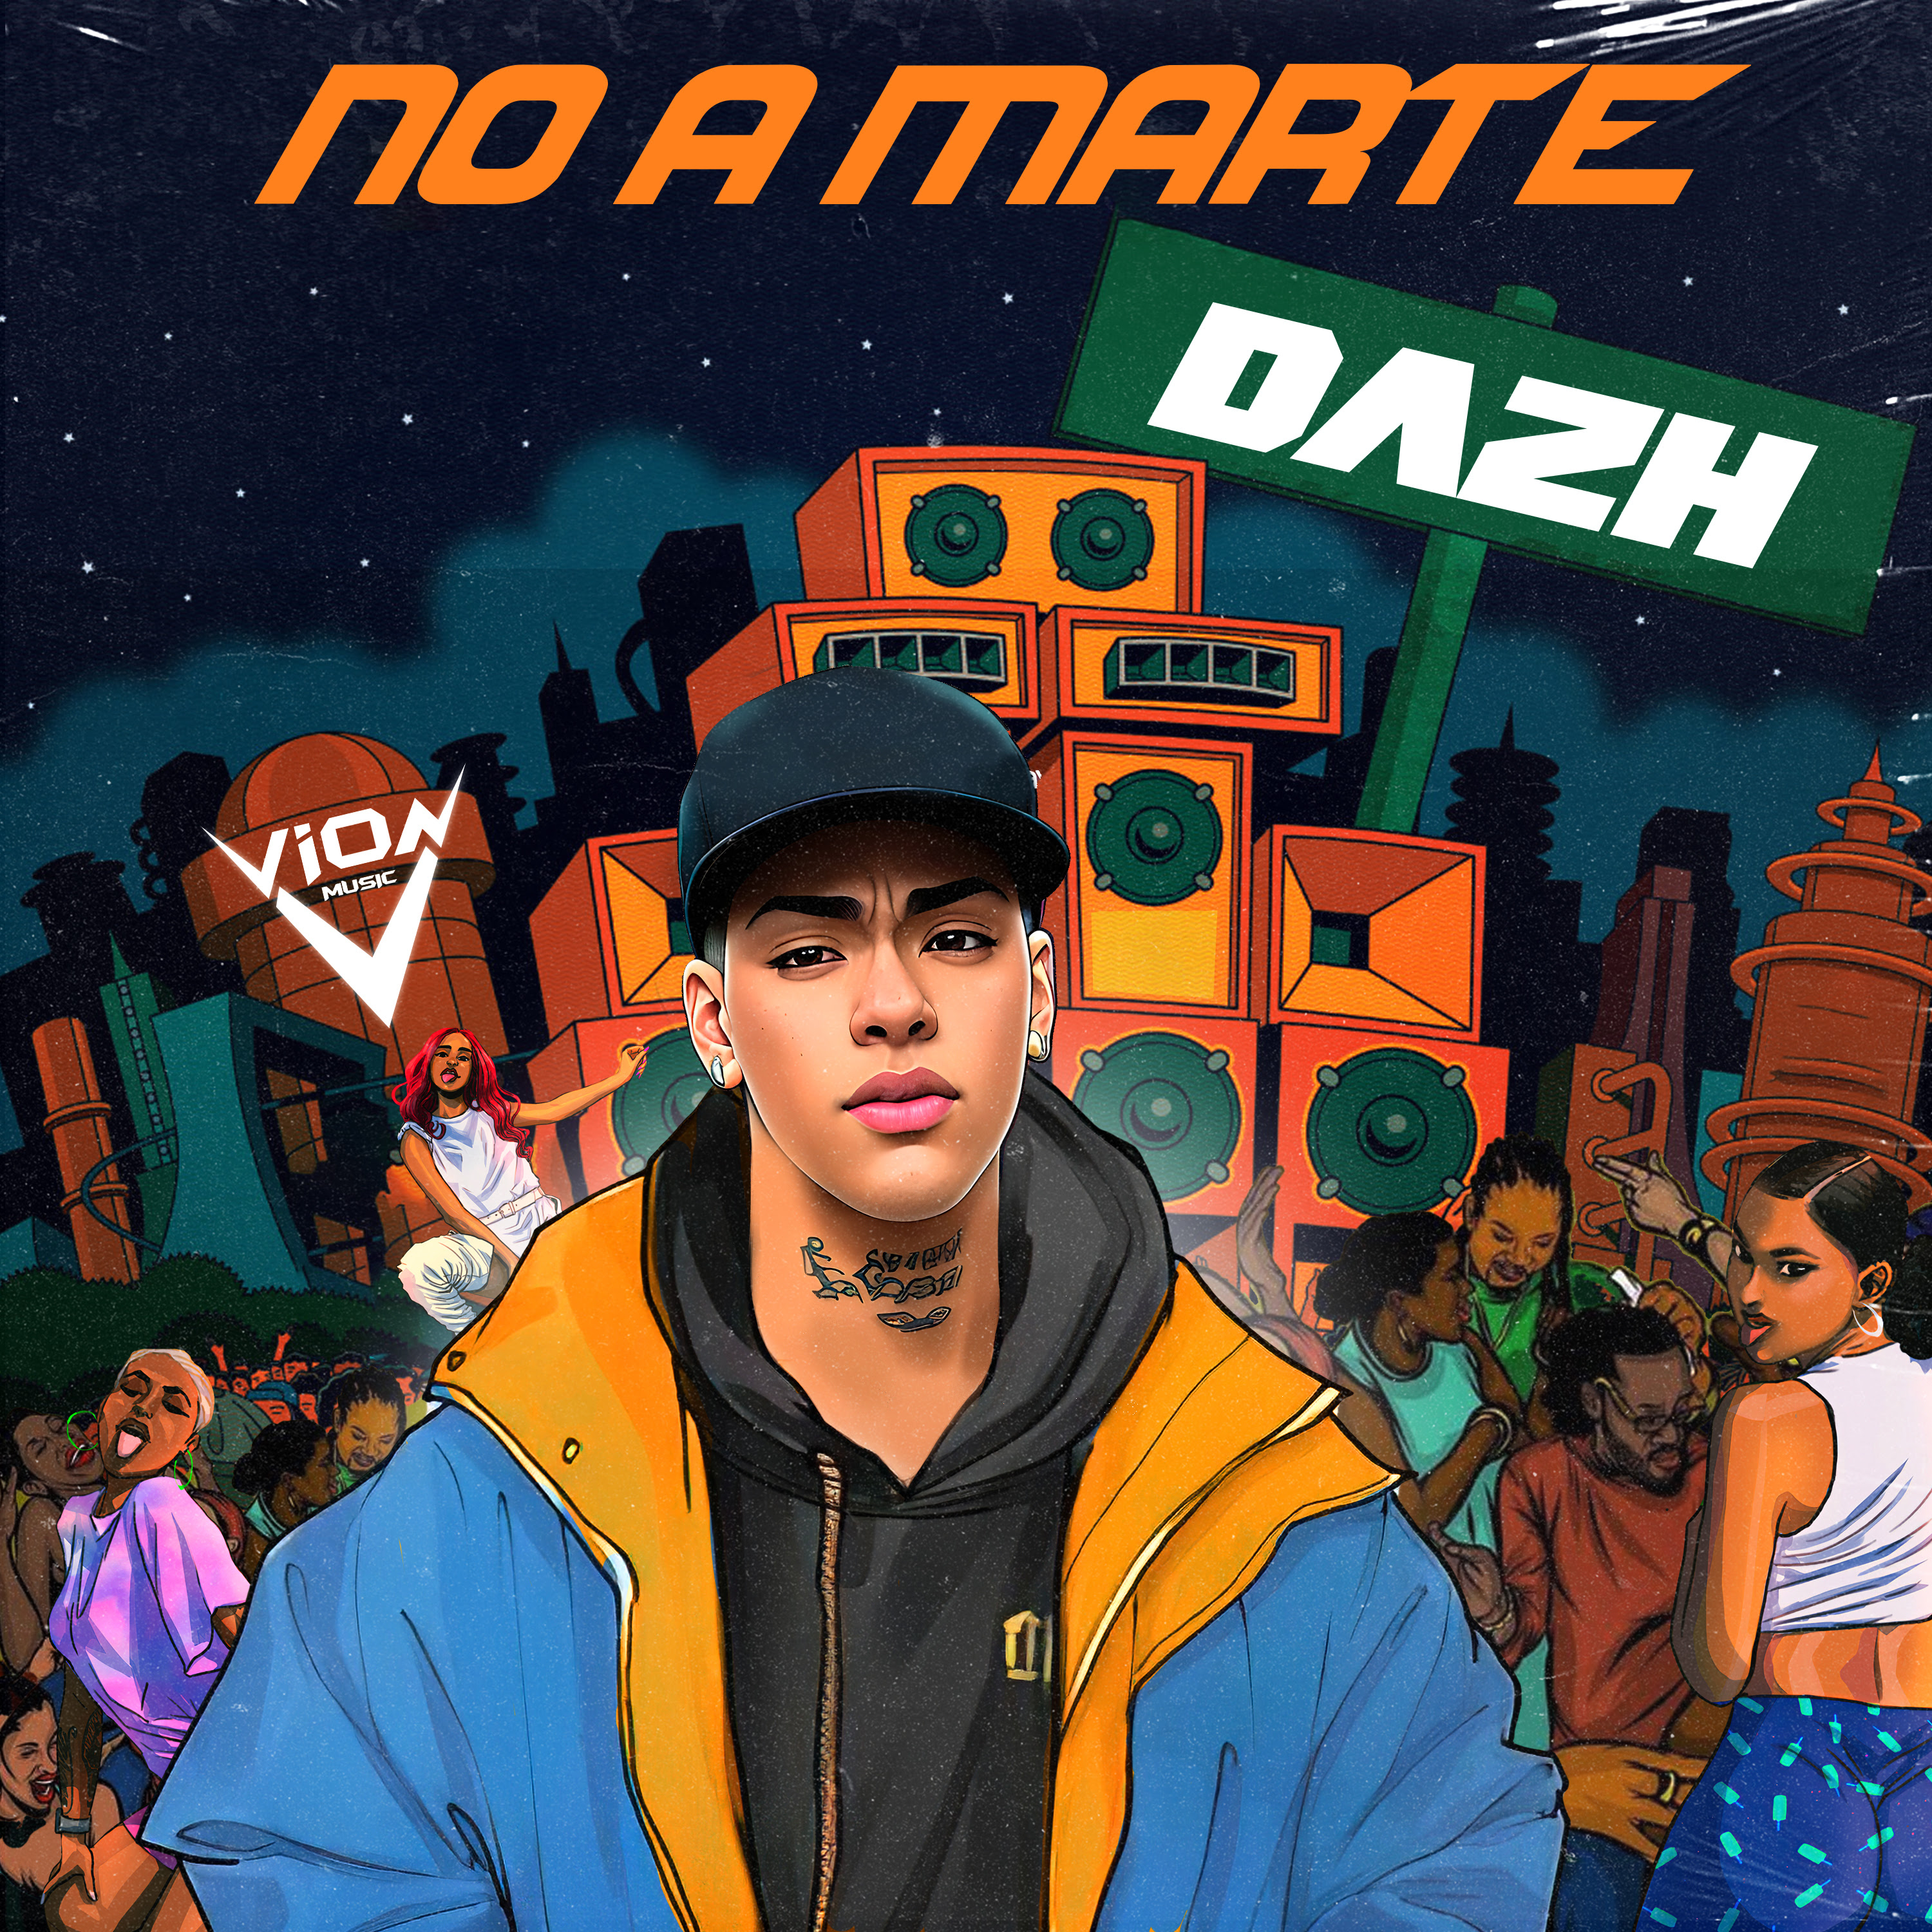 Dazh continúa proponiendo en el género urbano con su nuevo sencillo «No a Marte